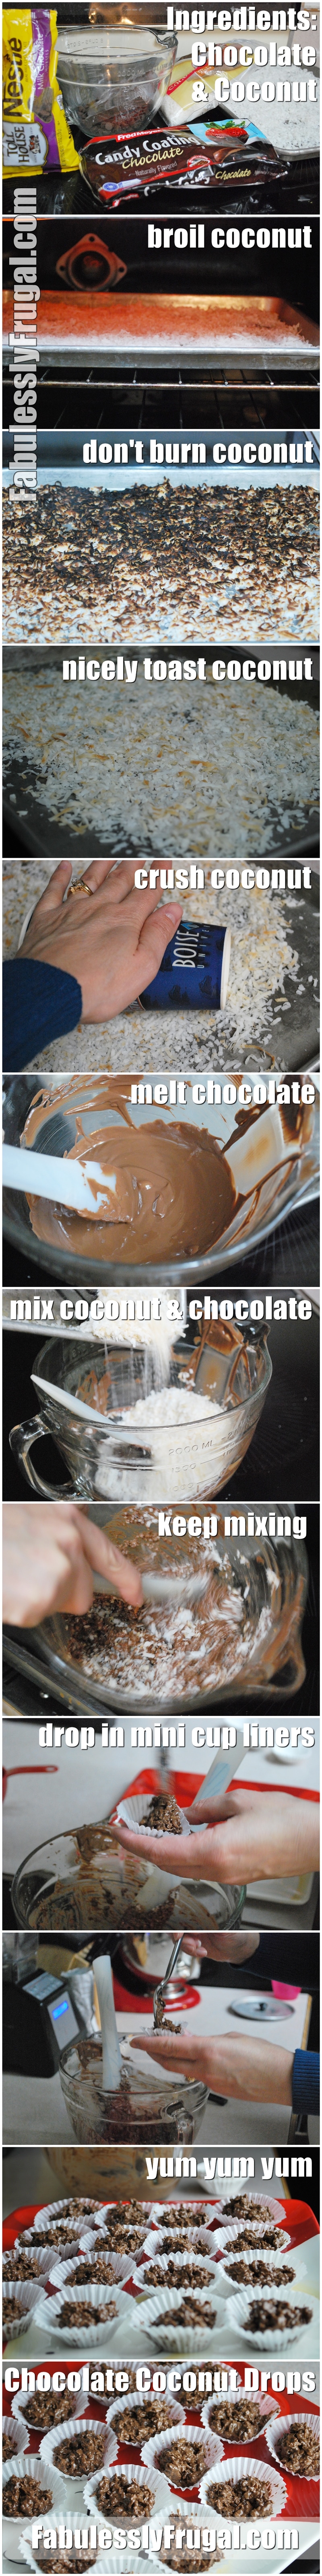 Chocolate Coconut Drops Recipe